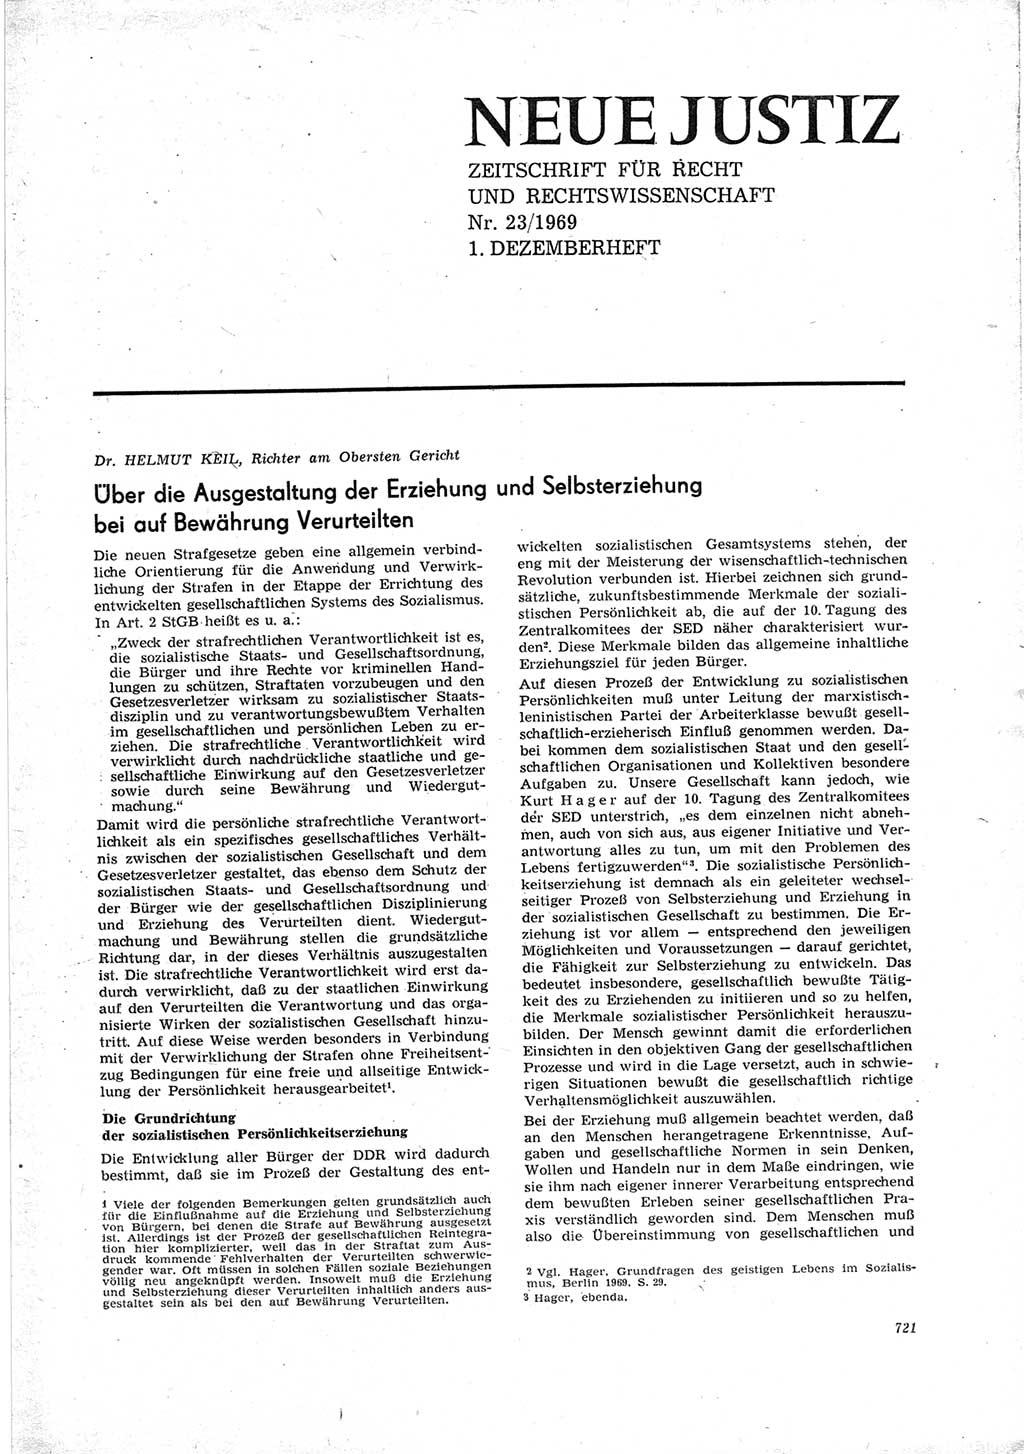 Neue Justiz (NJ), Zeitschrift für Recht und Rechtswissenschaft [Deutsche Demokratische Republik (DDR)], 23. Jahrgang 1969, Seite 721 (NJ DDR 1969, S. 721)